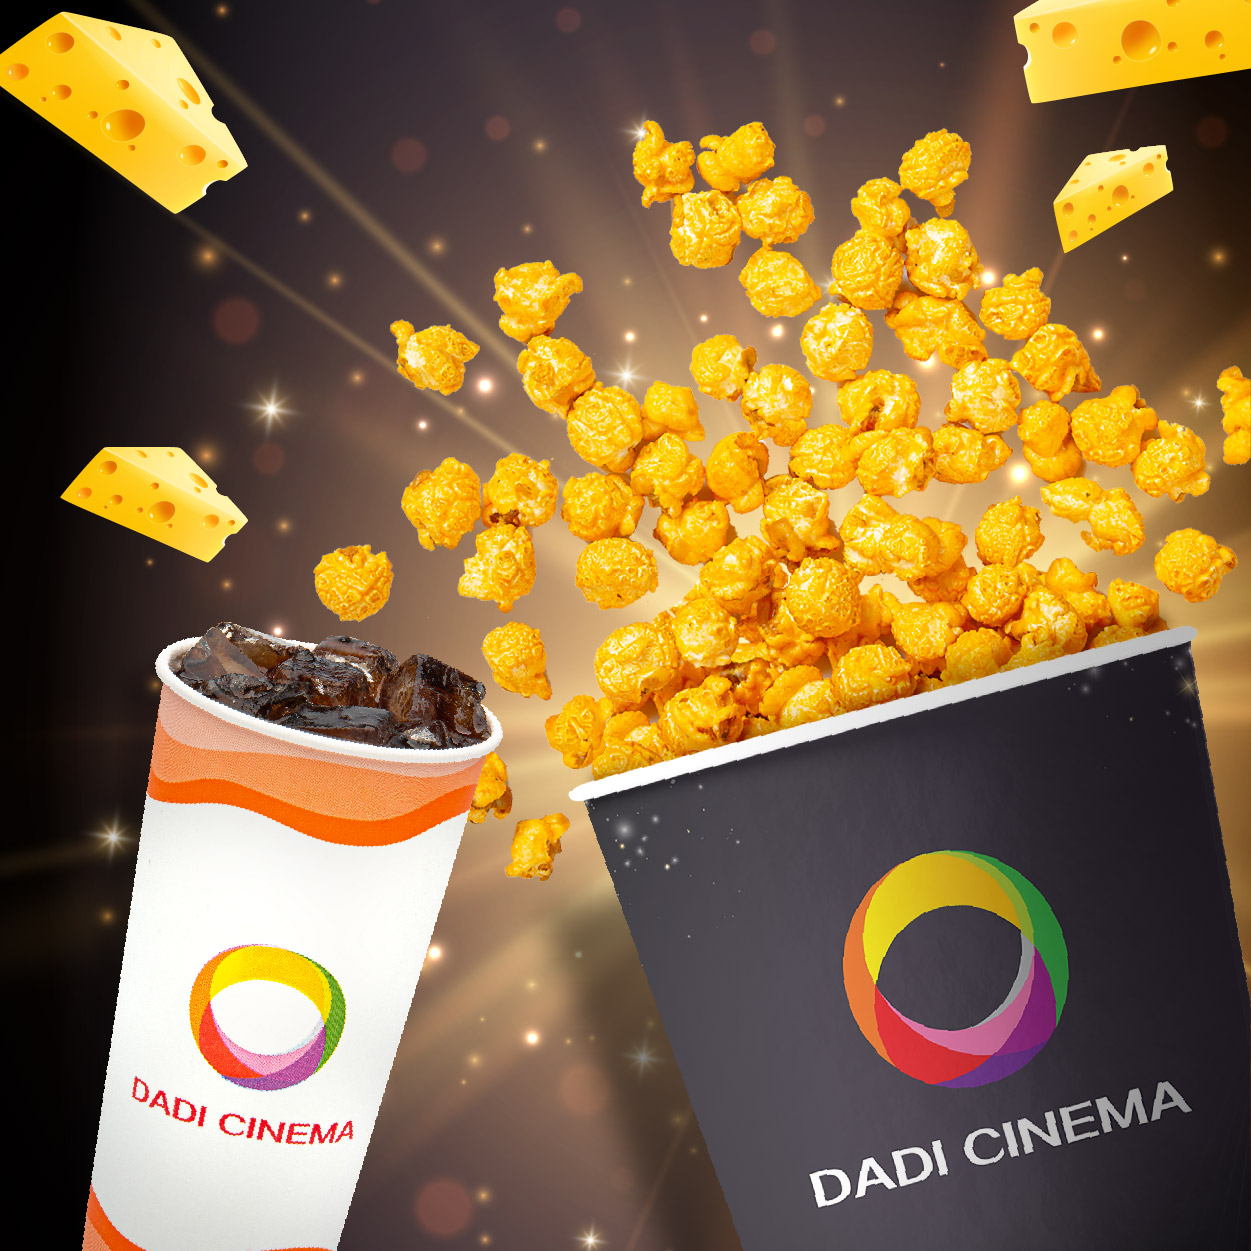 Dadi cinema showtime